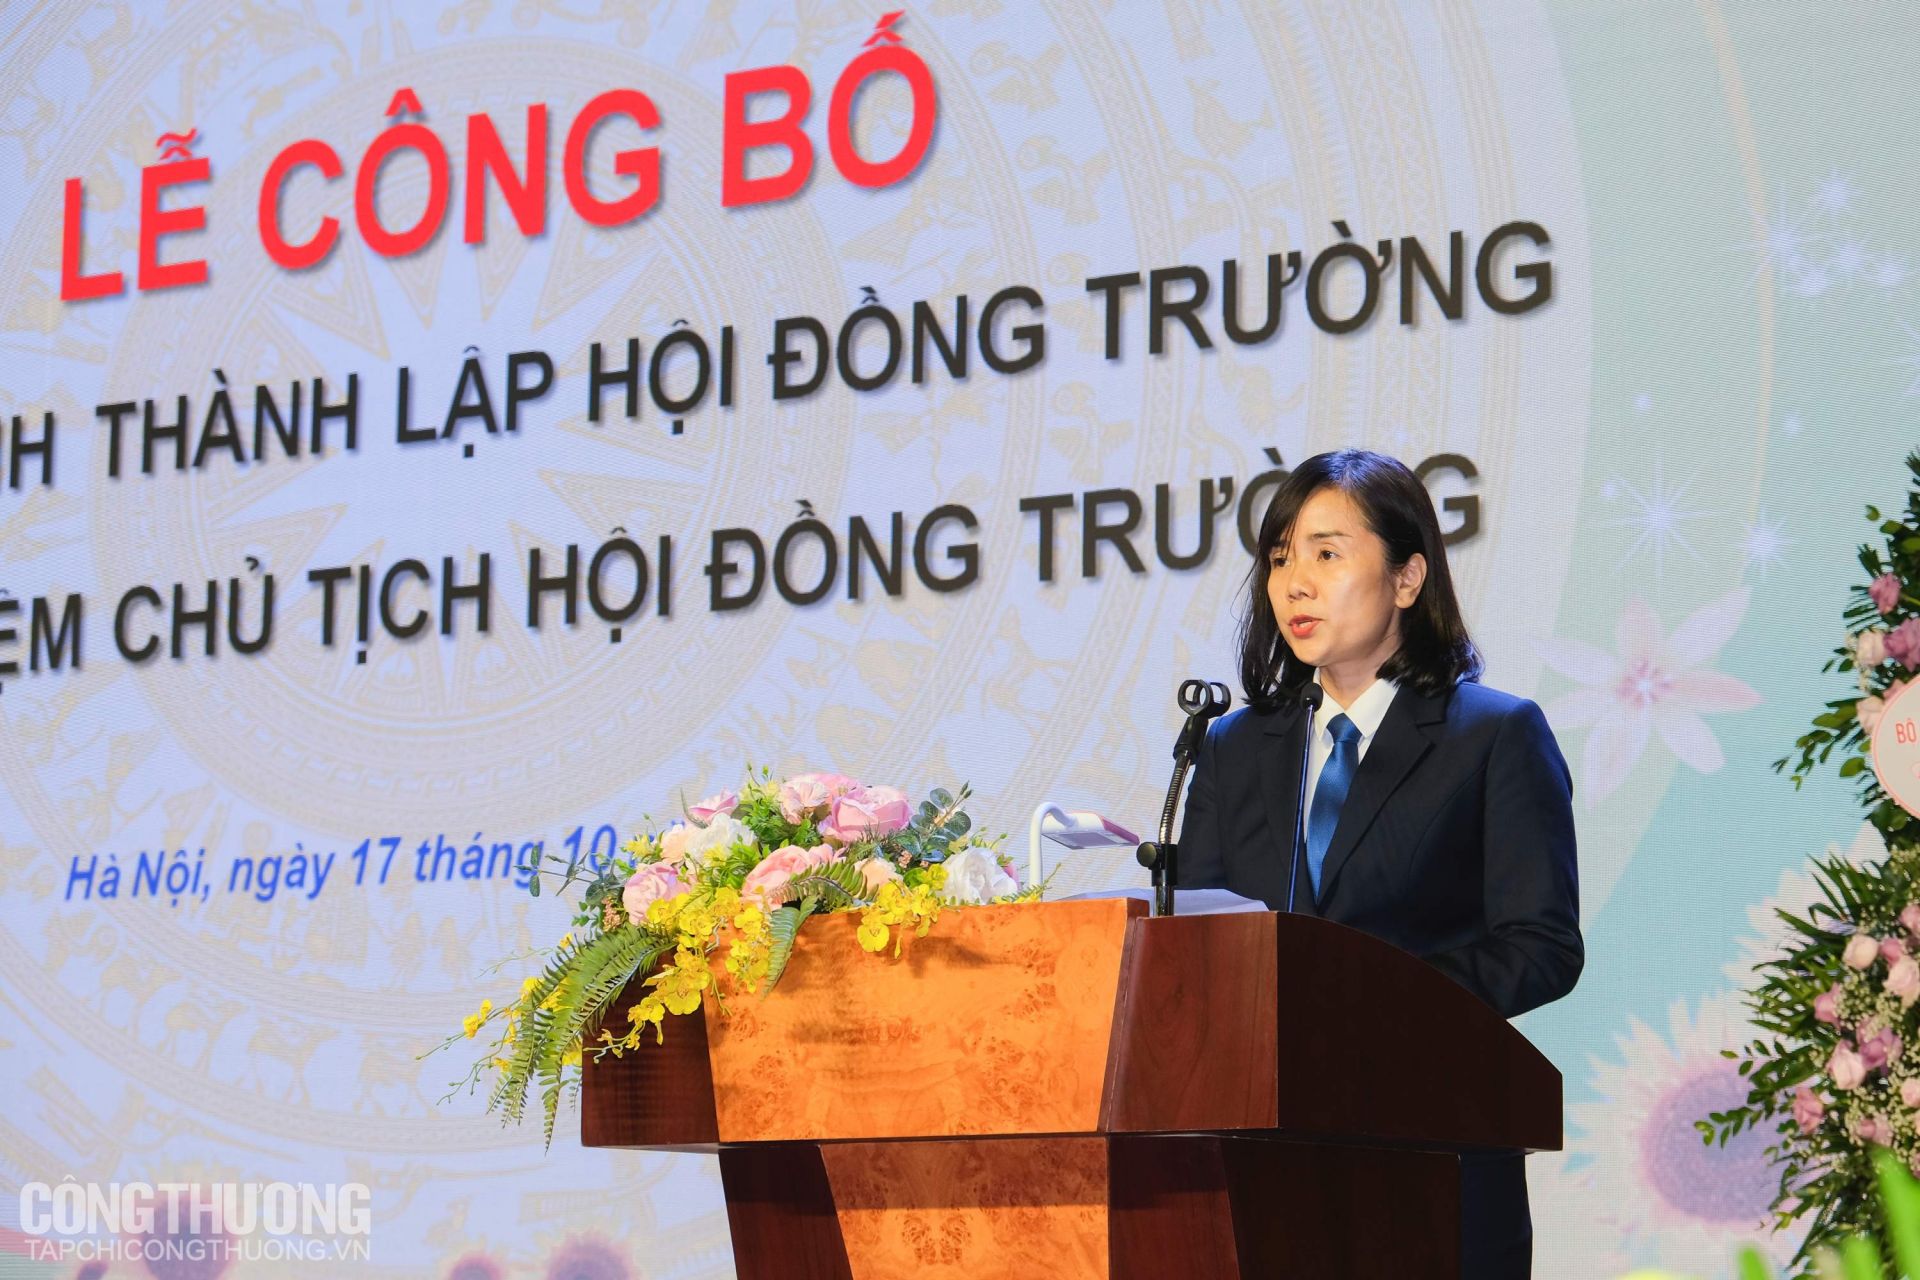 Bà Phạm Thị Thu Hoài - Chủ tịch Hội đồng Trường Đại học Kinh tế - Kỹ thuật công nghiệp